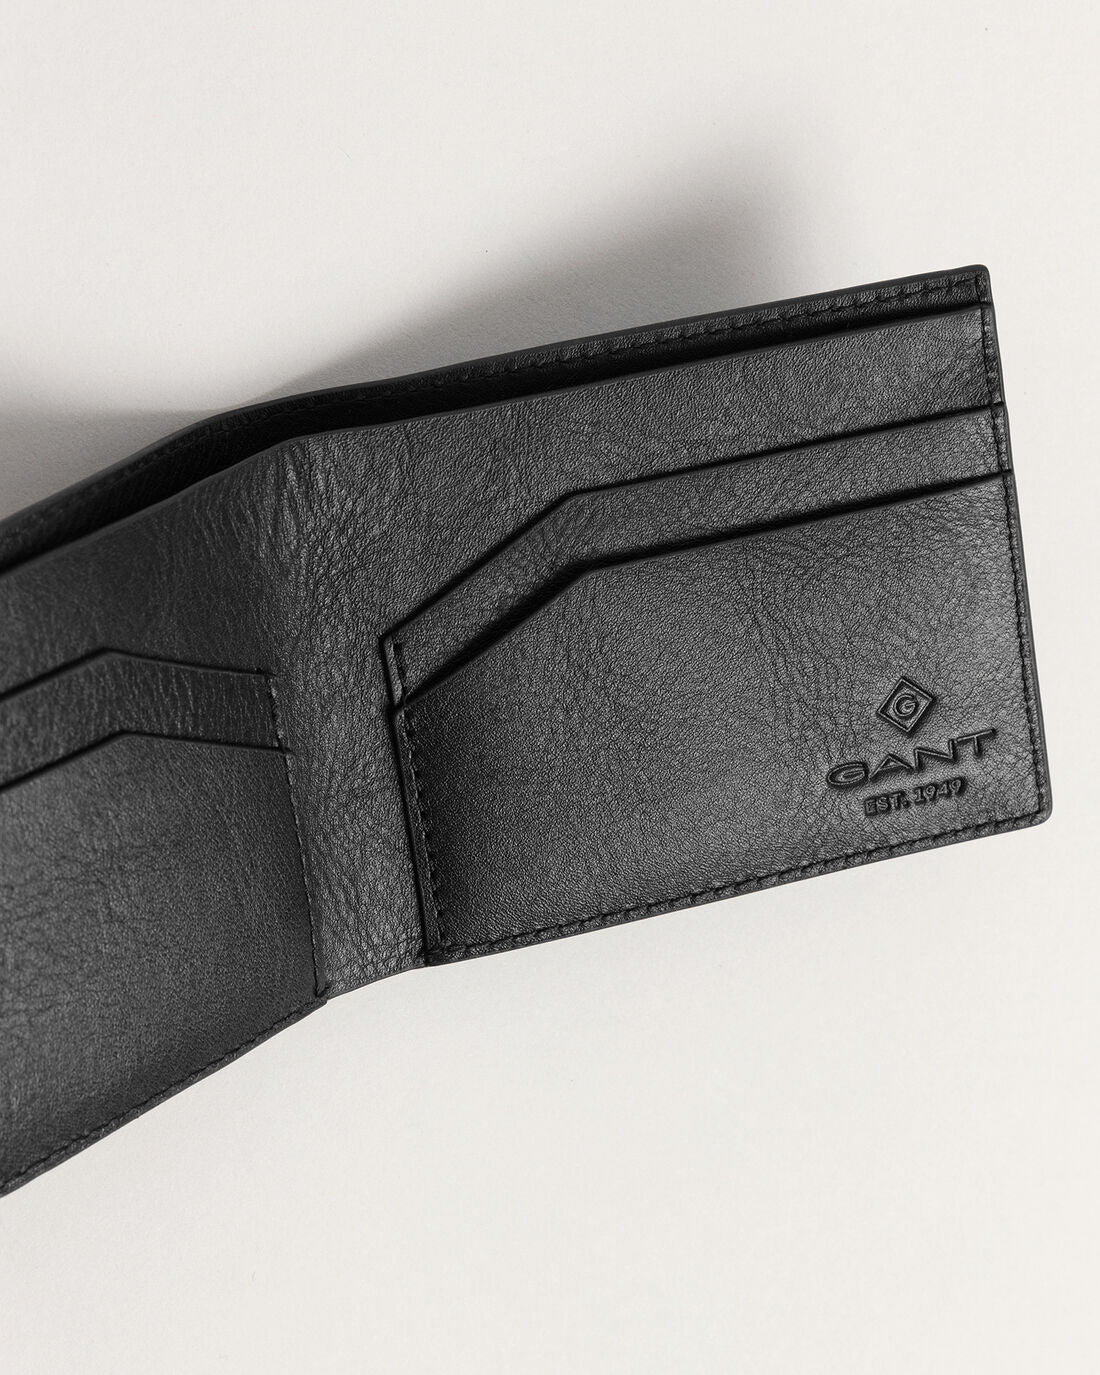 GANT Leather Wallet Black